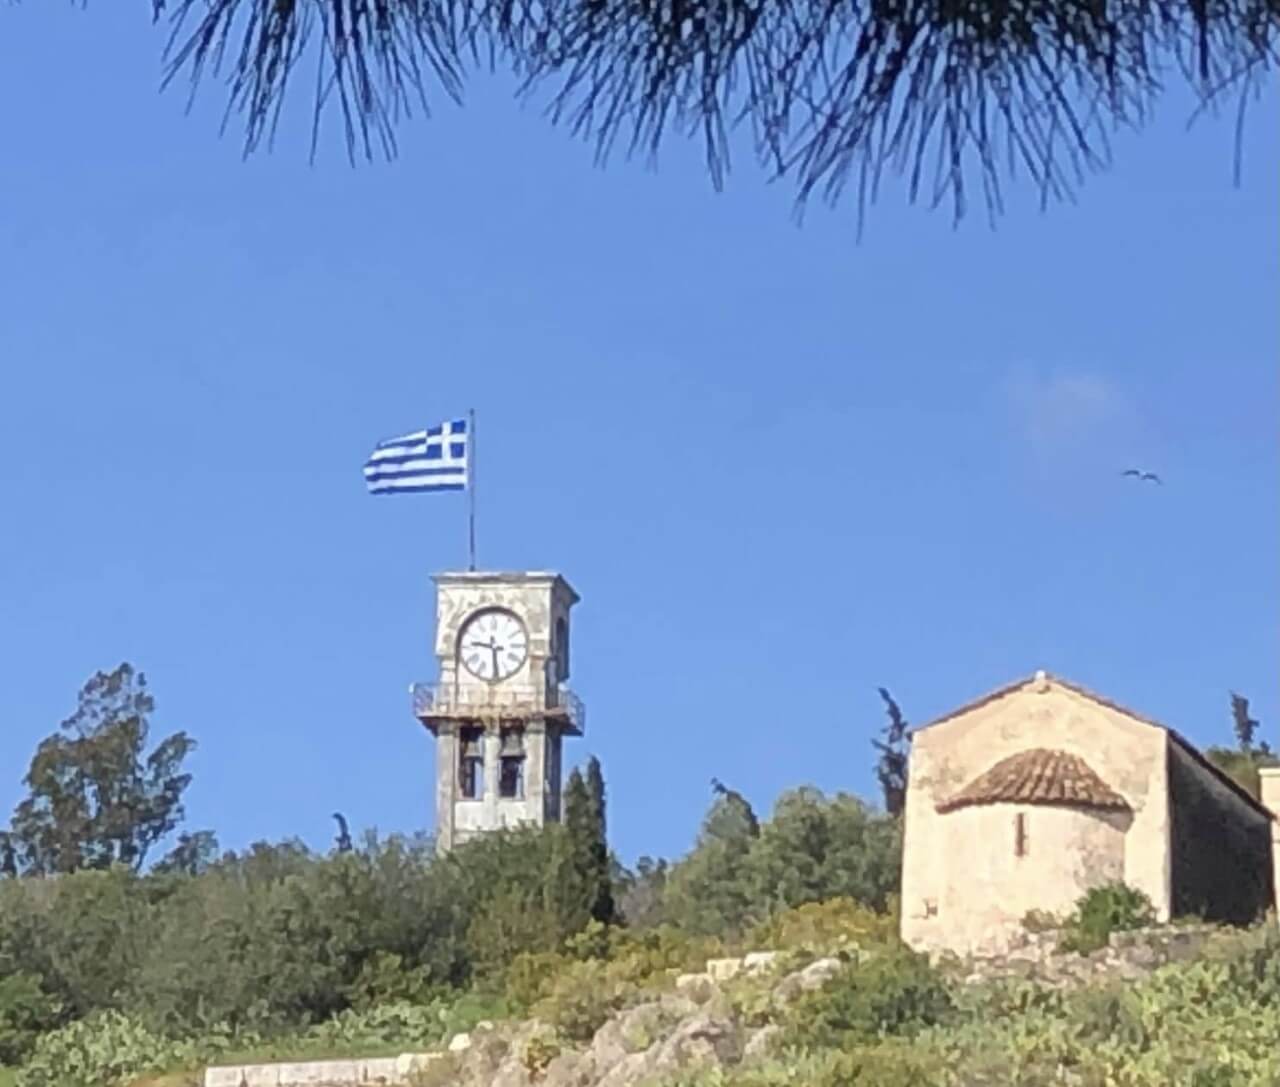 Δήμος Ελευσίνας : Το Ρολόι της πόλης στον κατάλογο «Νεοτέρων Μνημείων» της χώρας.